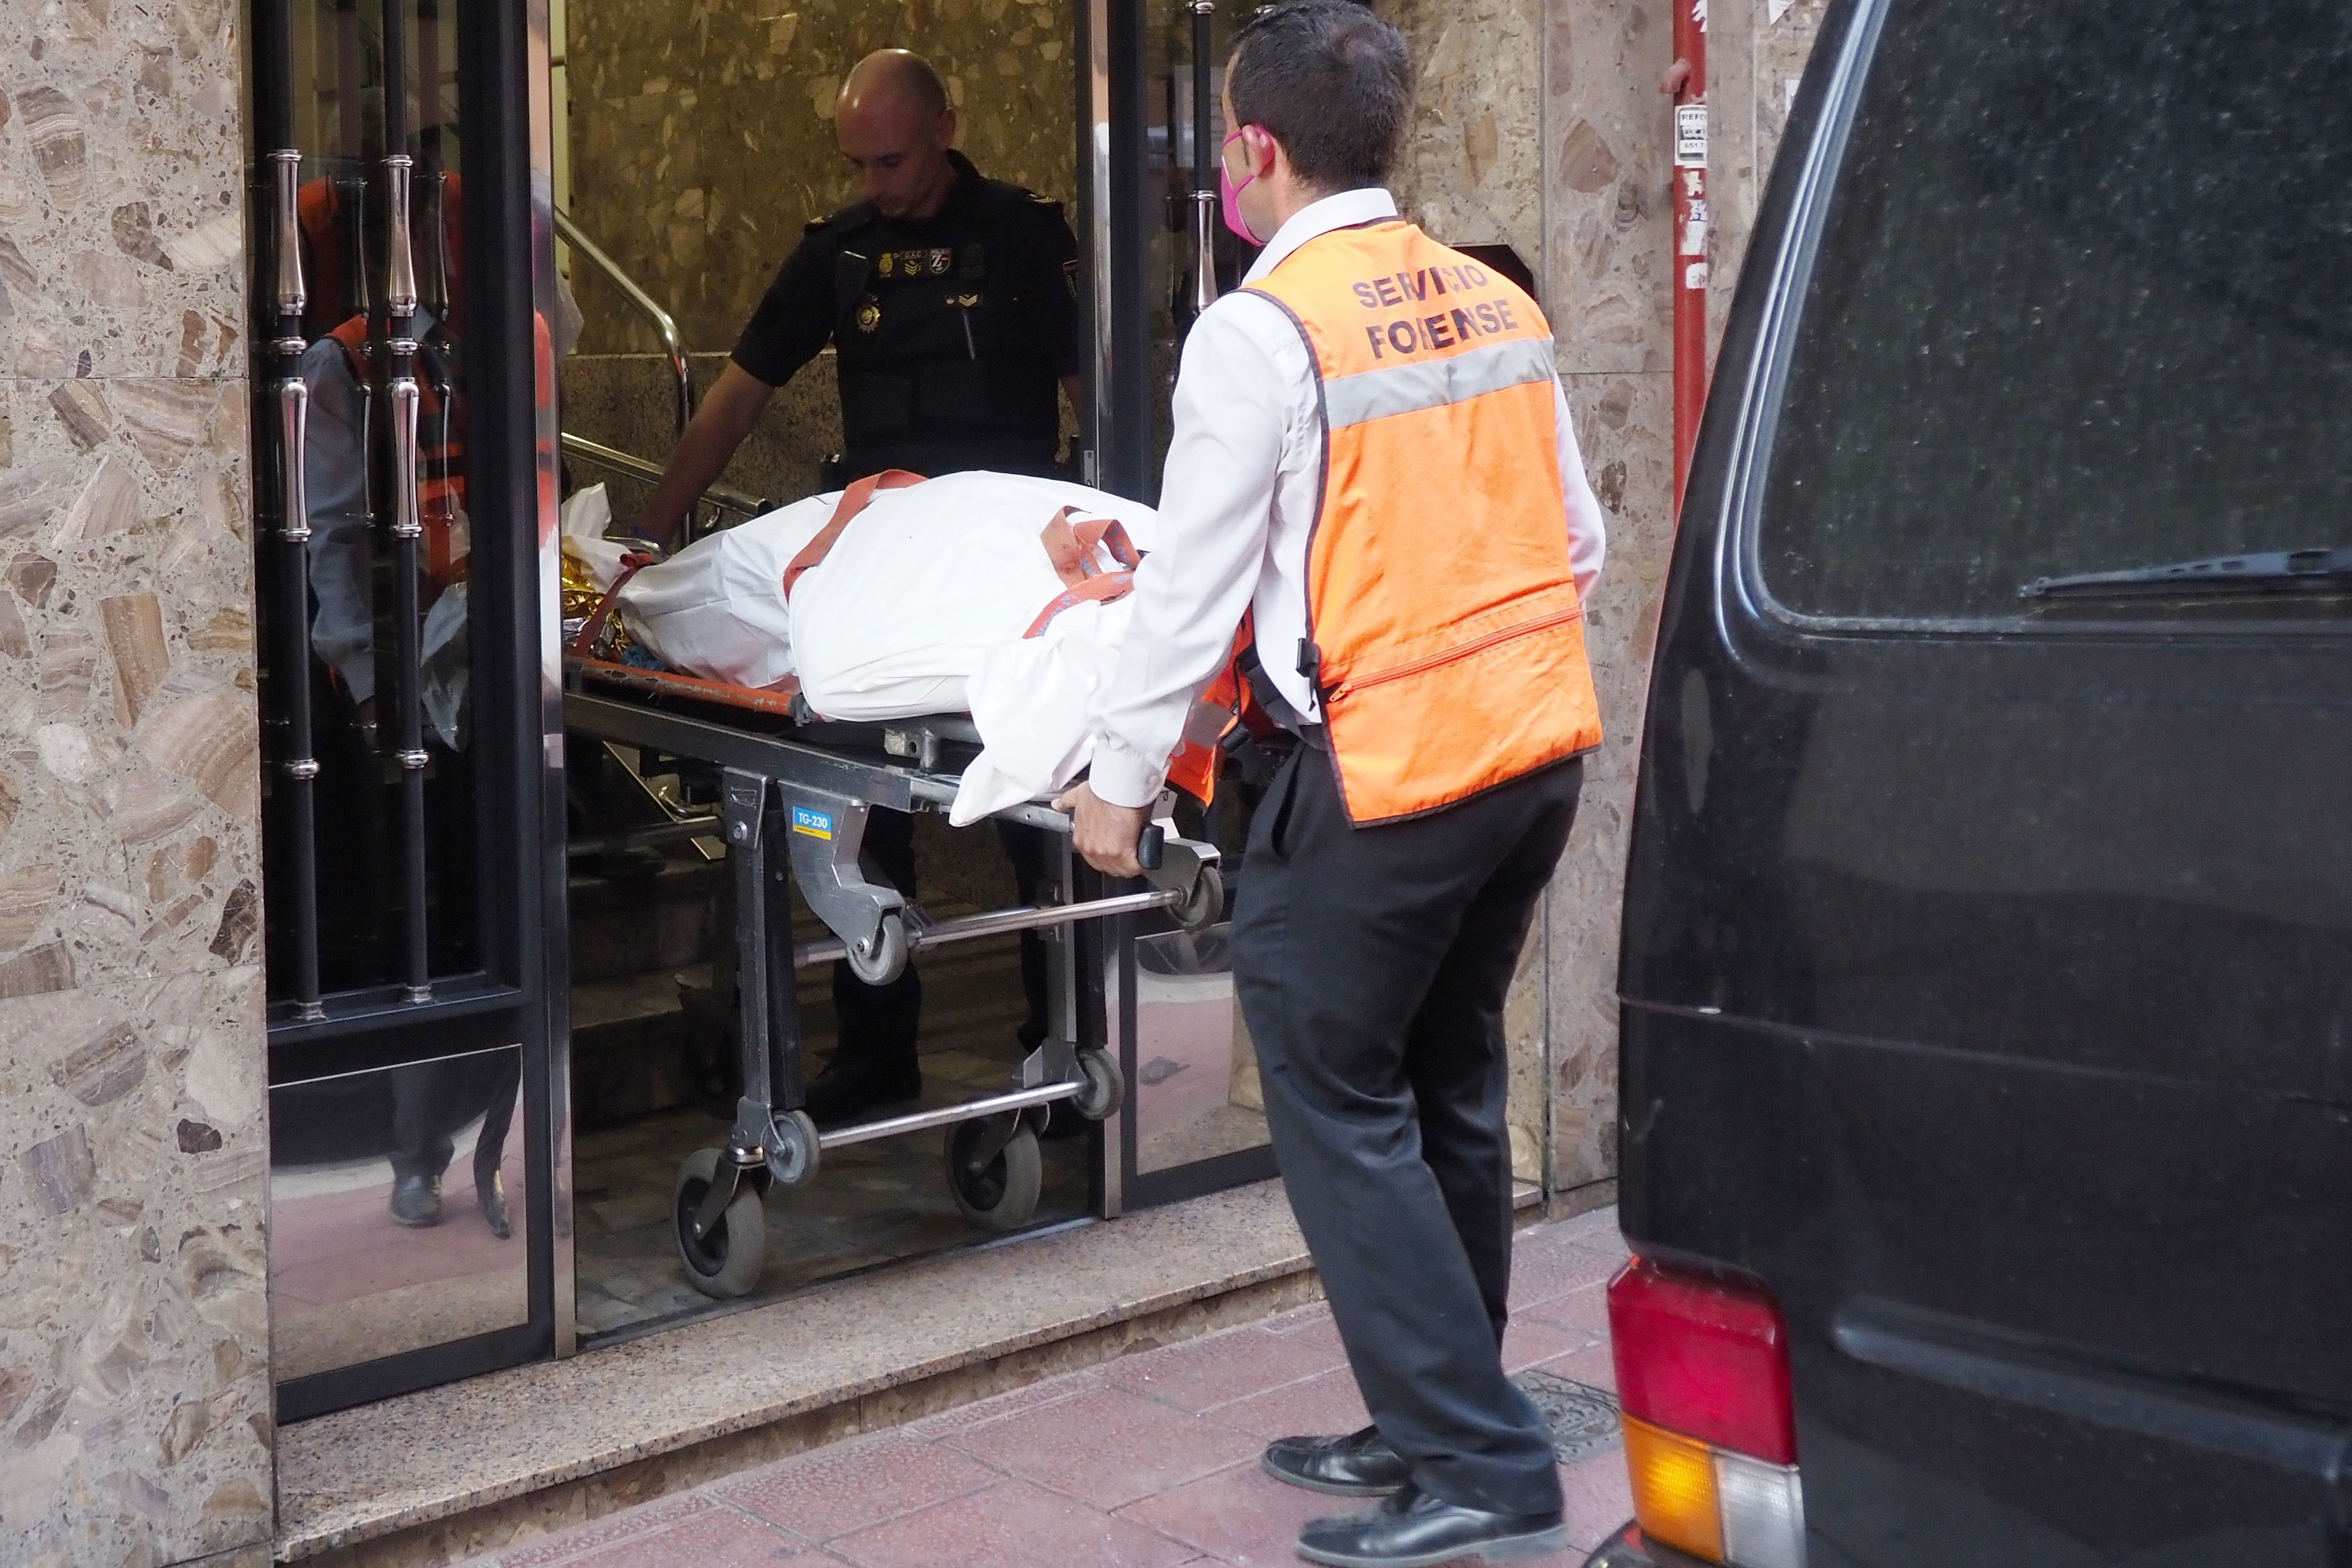 Empleados de los servicios funerarios sacan un cadáver de una de las viviendas de Valladolid donde se produjeron los asesinatos.